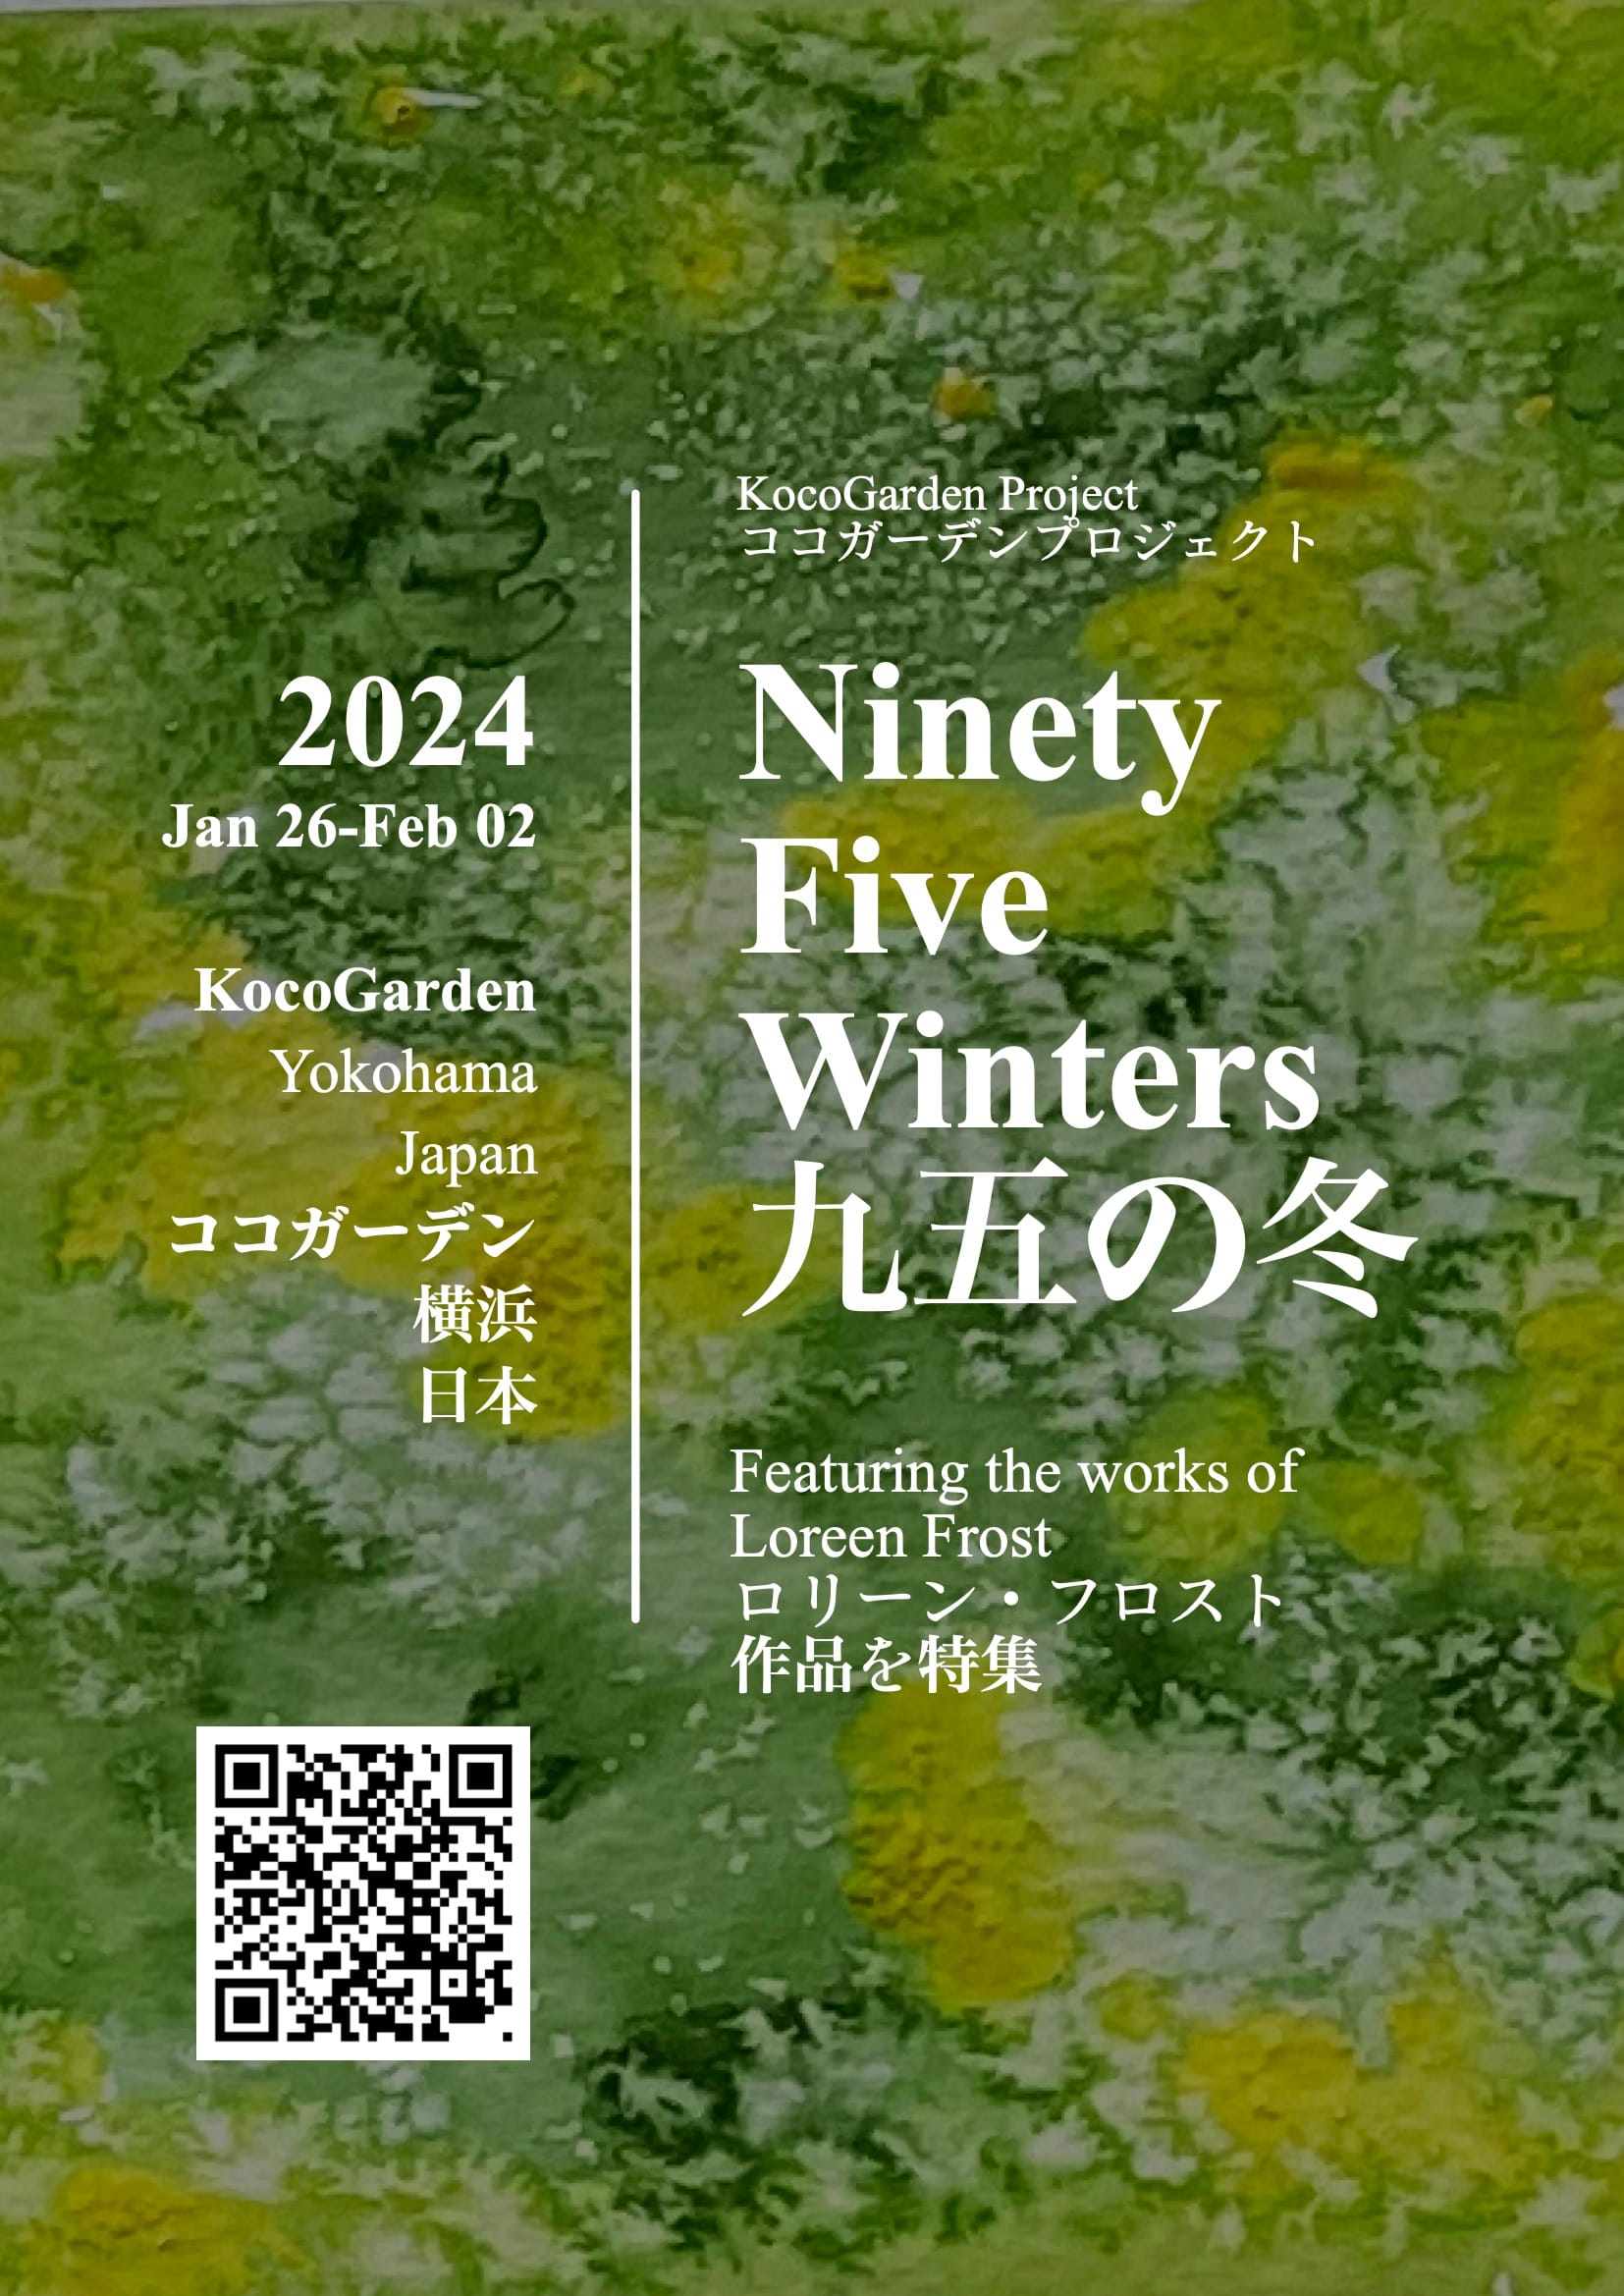 Ninety Five Winters